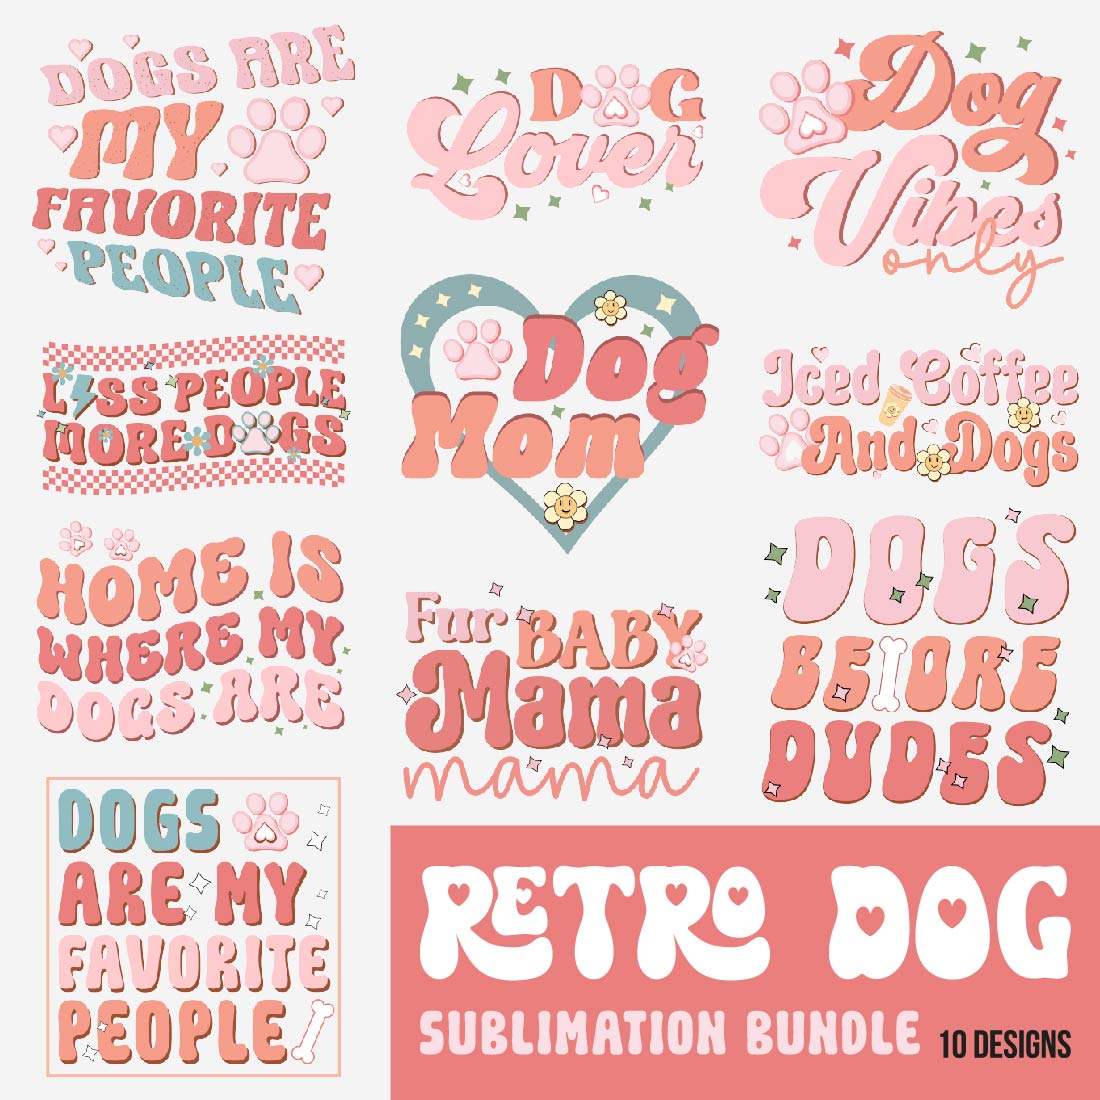 Retro Dog Sublimation Bundle cover image.